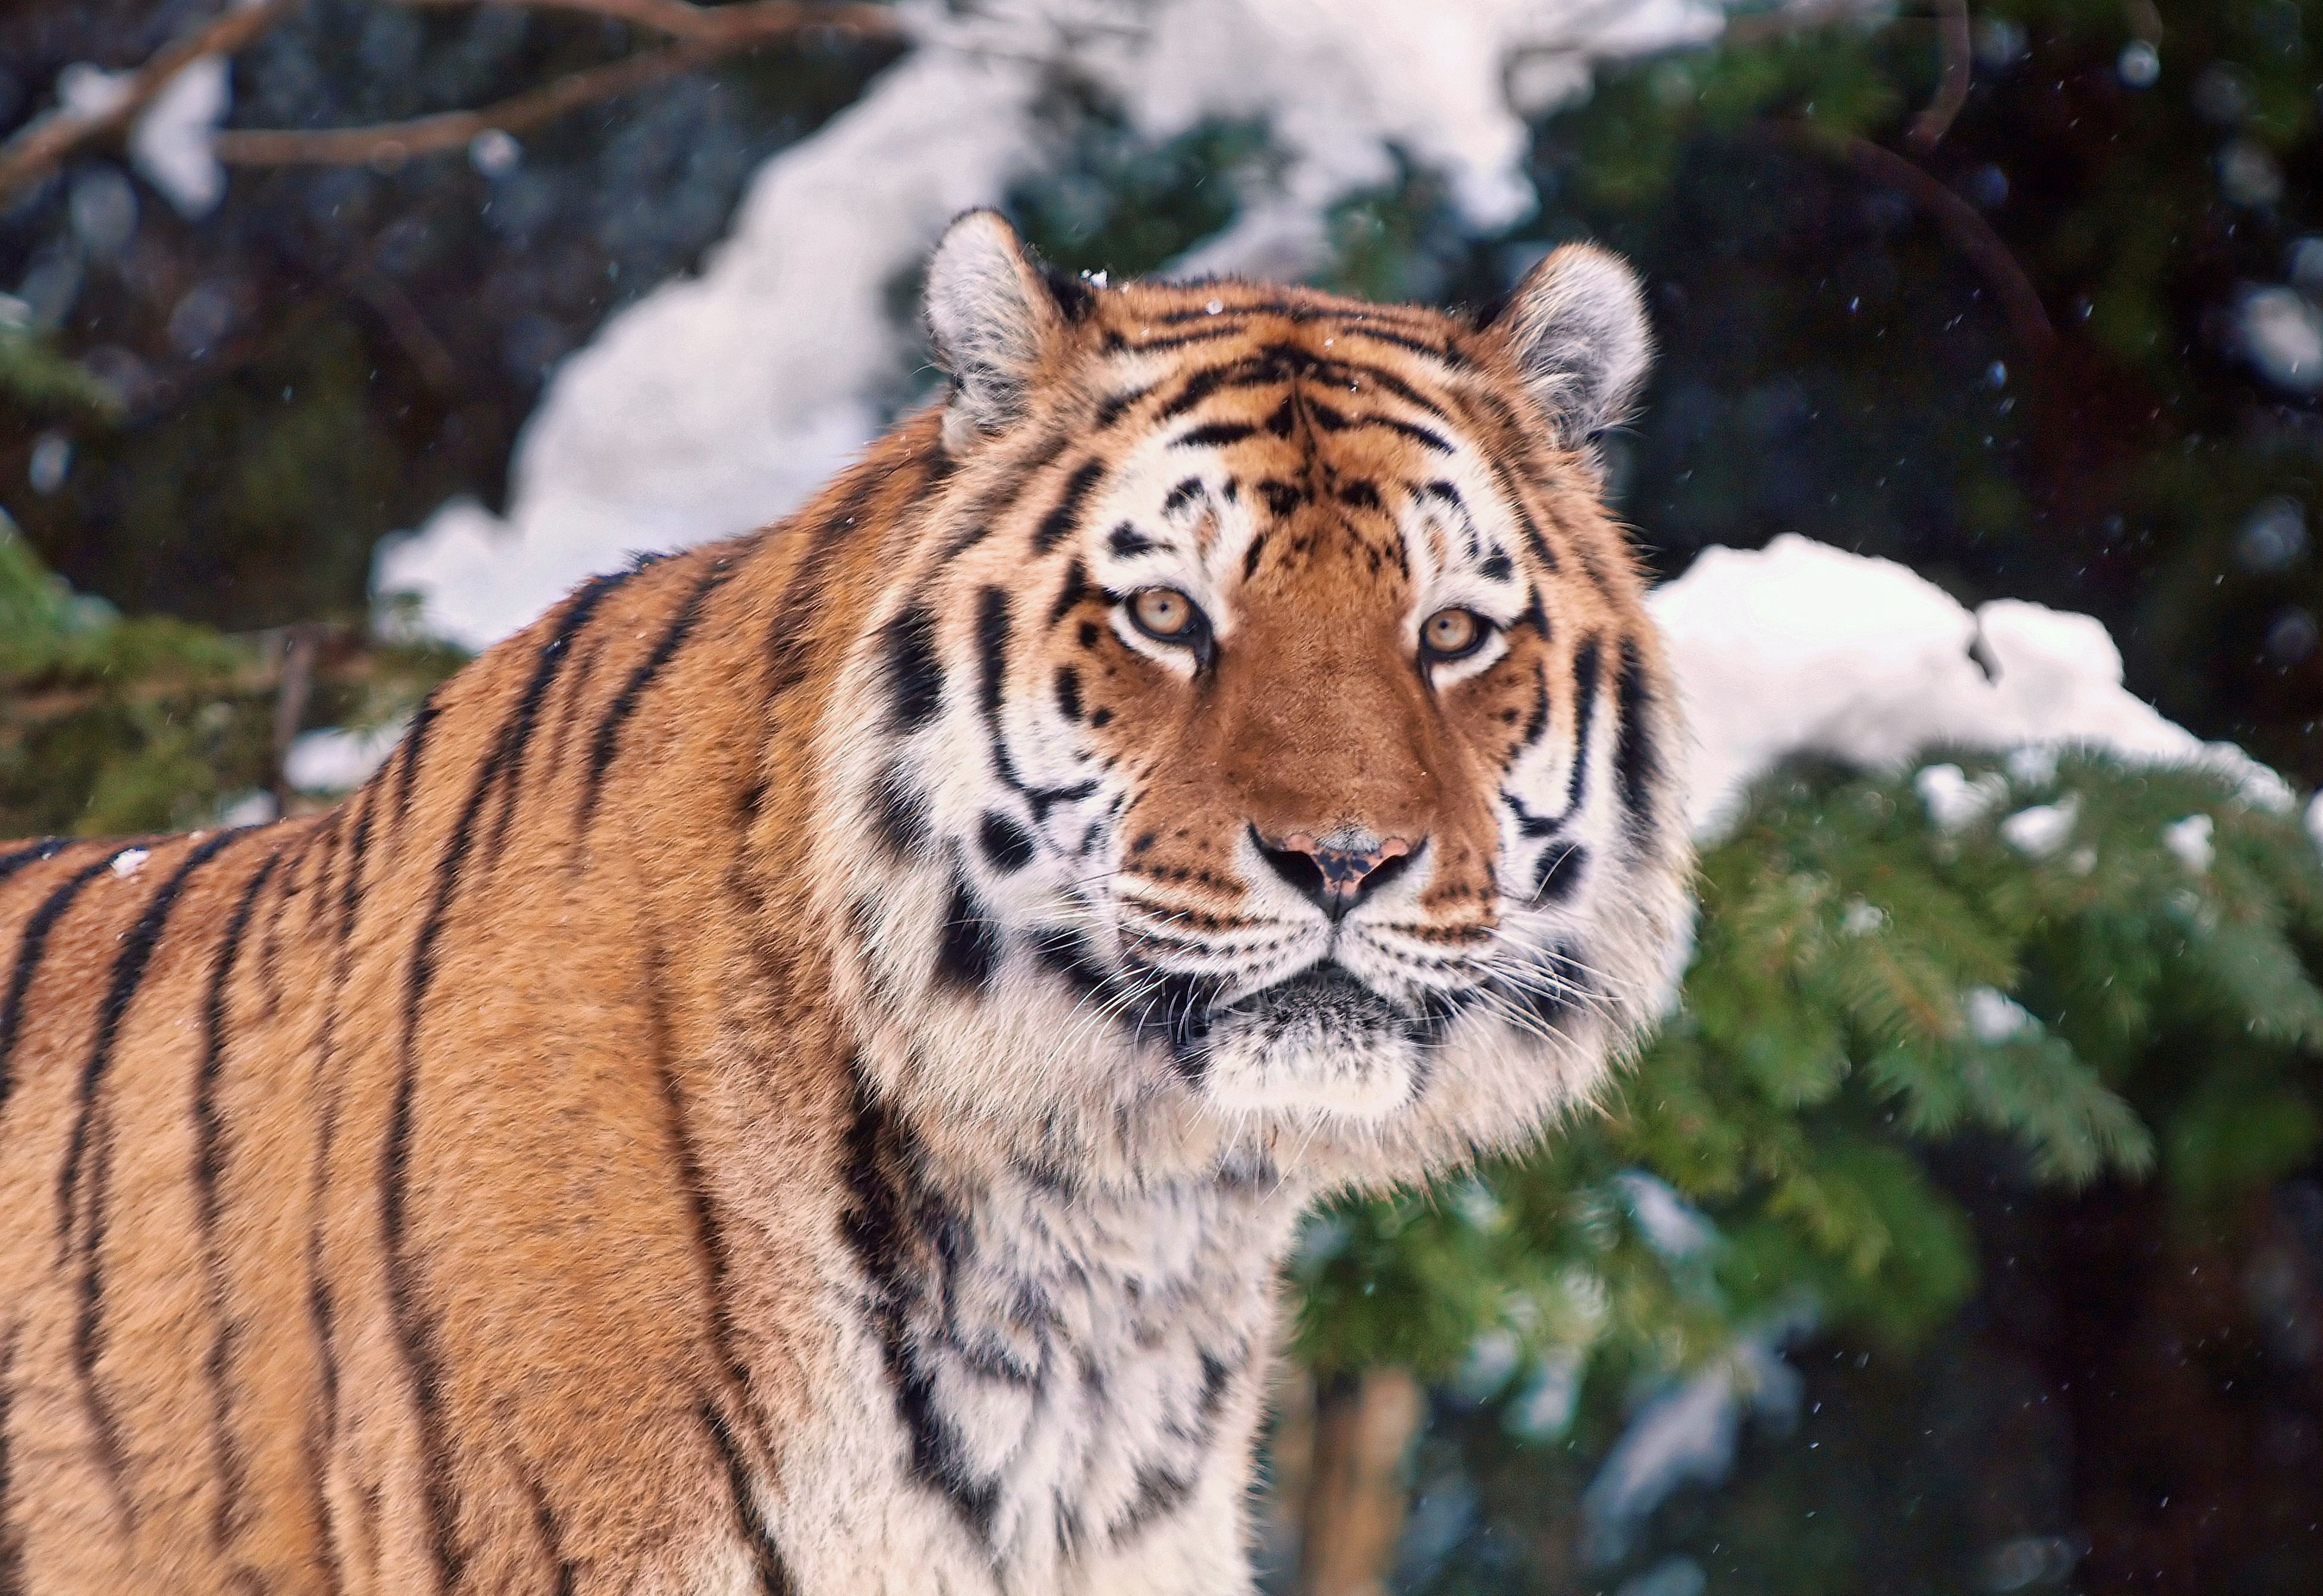 Скачать обои бесплатно Снег, Деревья, Морда, Животные, Тигр картинка на рабочий стол ПК